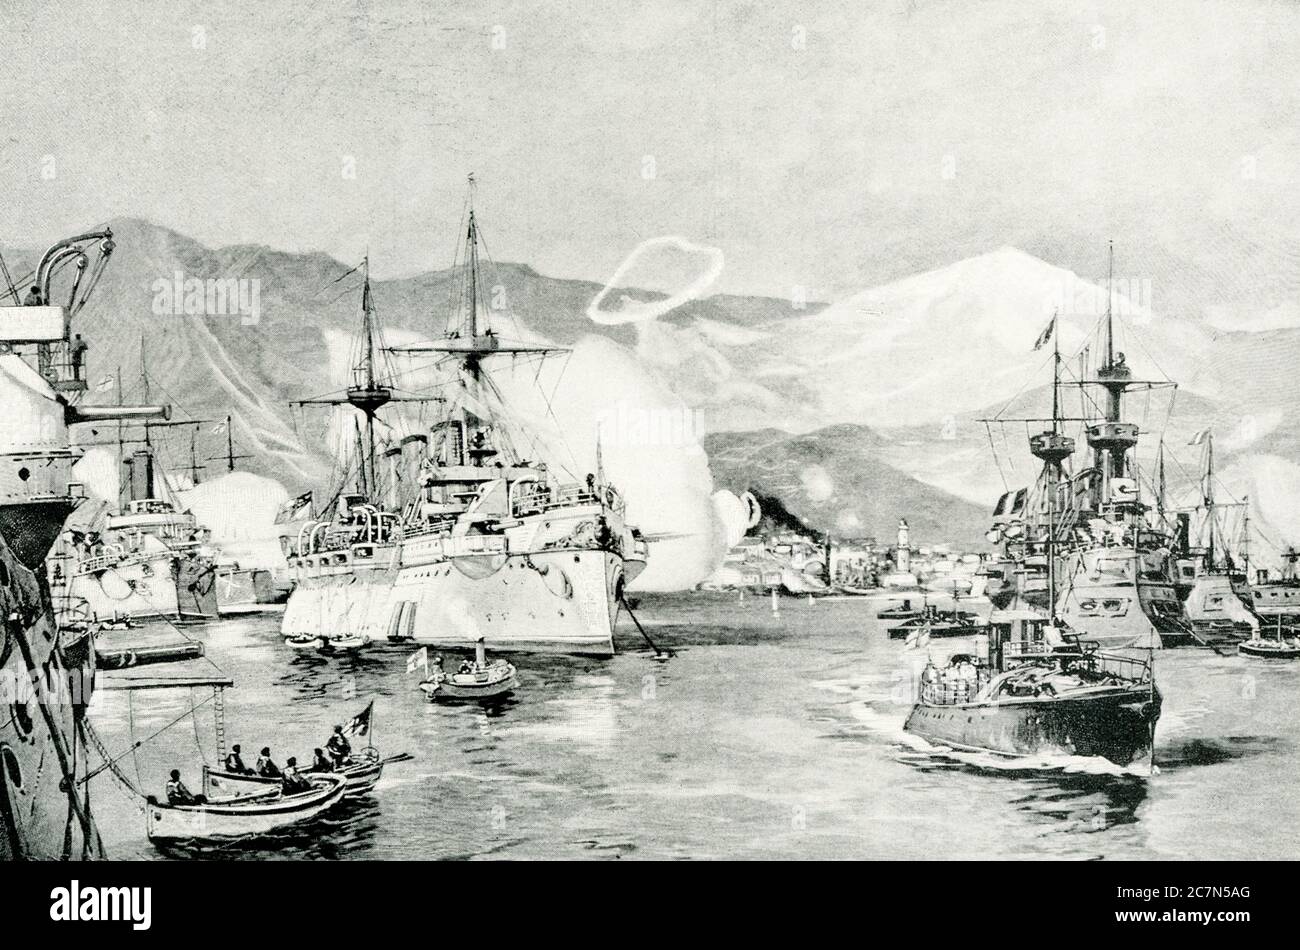 Bombardierung Caneas durch die Vereinten Mächte. 1896 stritten sich die Griechen und Türken auf der Insel Kreta, und die großen Mächte Europas traten ein, um den Frieden zu bewahren. Die Aufständischen in Canea weigerten sich, die Stadt zu evakuieren, so dass die Kriegsschiffe sie am 21. Februar 1897 bombardierten. Es war ziemlich fazical, alle diese großen Schiffe schossen auf eine kleine Stadt; aber sie kümmerten sich darum, sie so wenig wie möglich zu verletzen, sie wollten nur die Aufständischen davon überzeugen, dass sie vereint und ernsthaft waren. Das ist die Kaiserin Augusta im Zentrum, eines der schwersten Kriegsschiffe Deutschlands. Es gibt ein englisches Schiff mit ihrem b Stockfoto